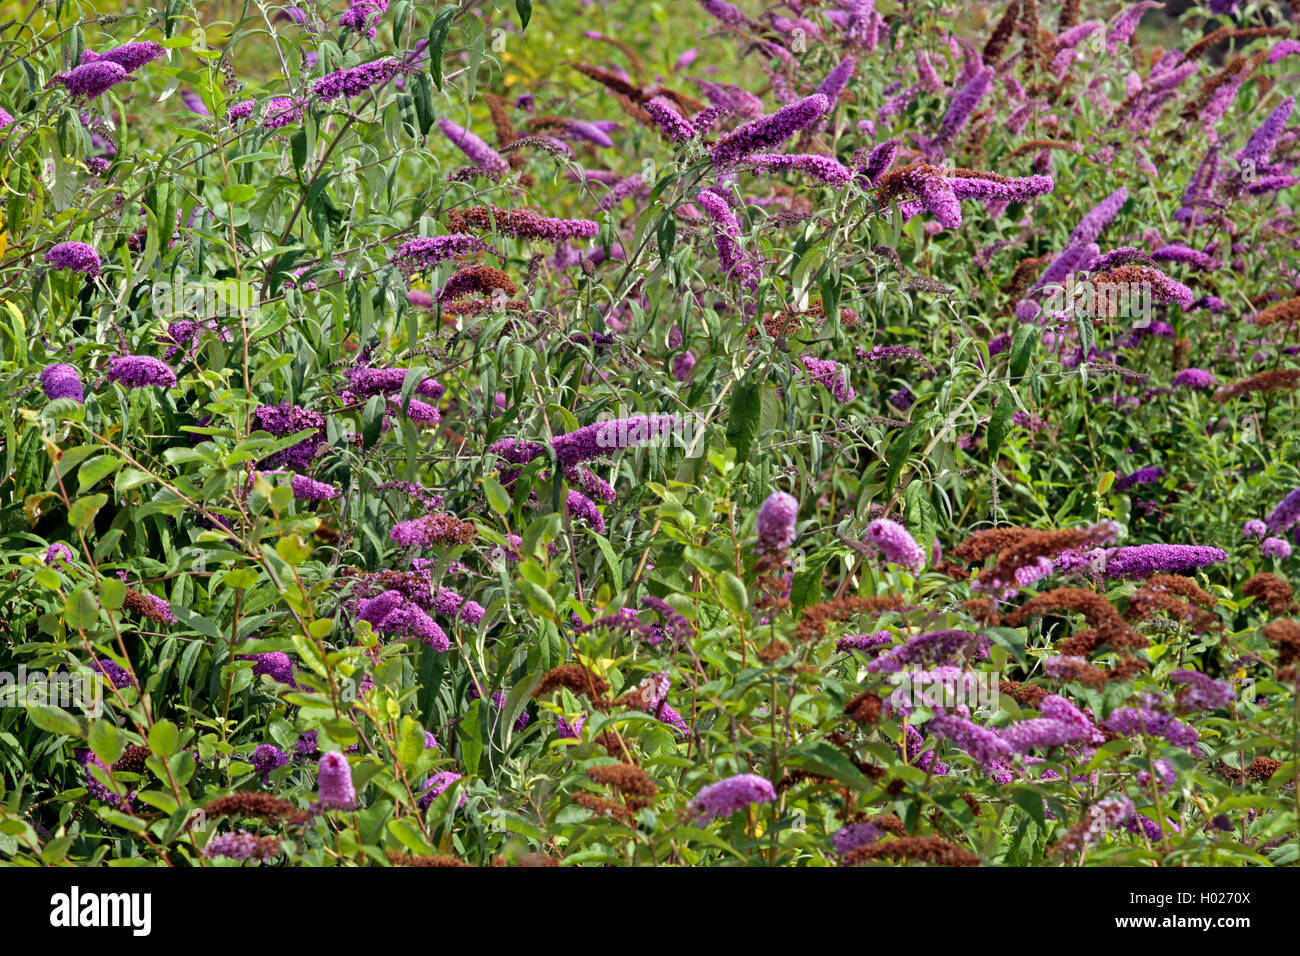 Arbusto de mariposas, Violeta butterfly bush, Verano, Mariposa de color lila-bush, ojo naranja (Buddleja davidii, Buddleia davidii), floreciendo, Alemania Foto de stock